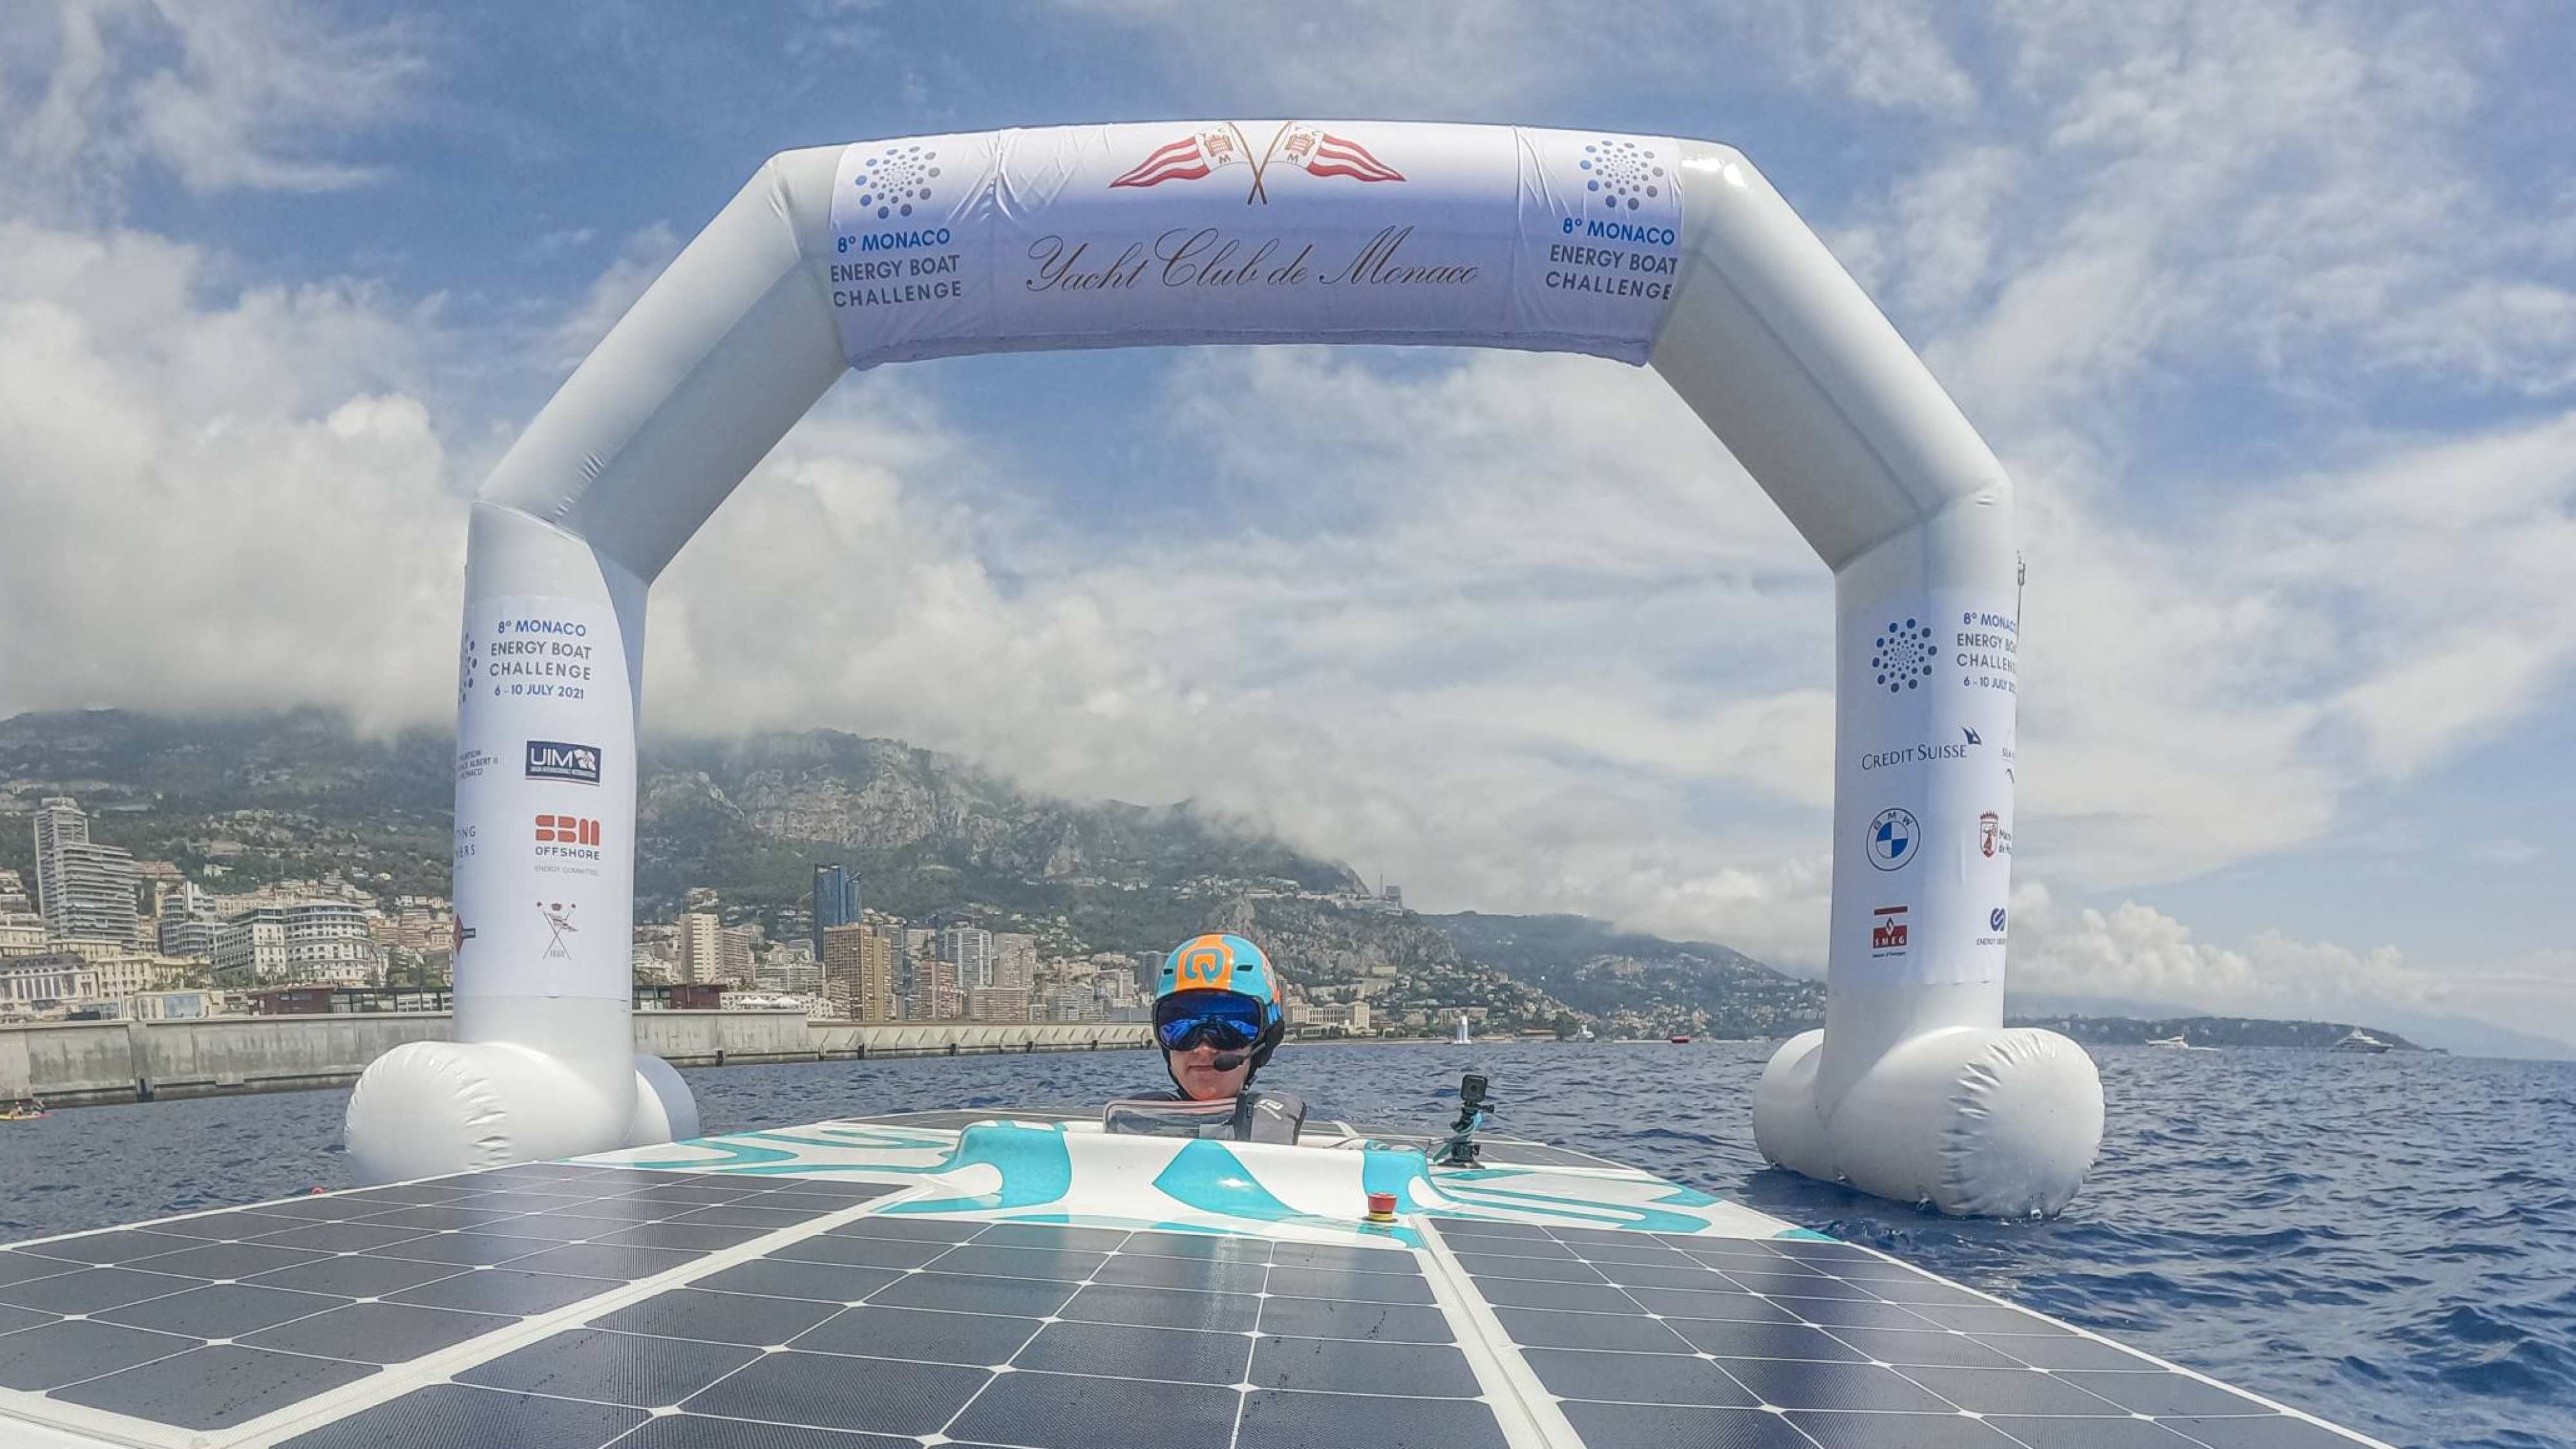 Solarboat in actie tijdens Energy Boat Challenge in Monaco met piloot Mitchel Kraai